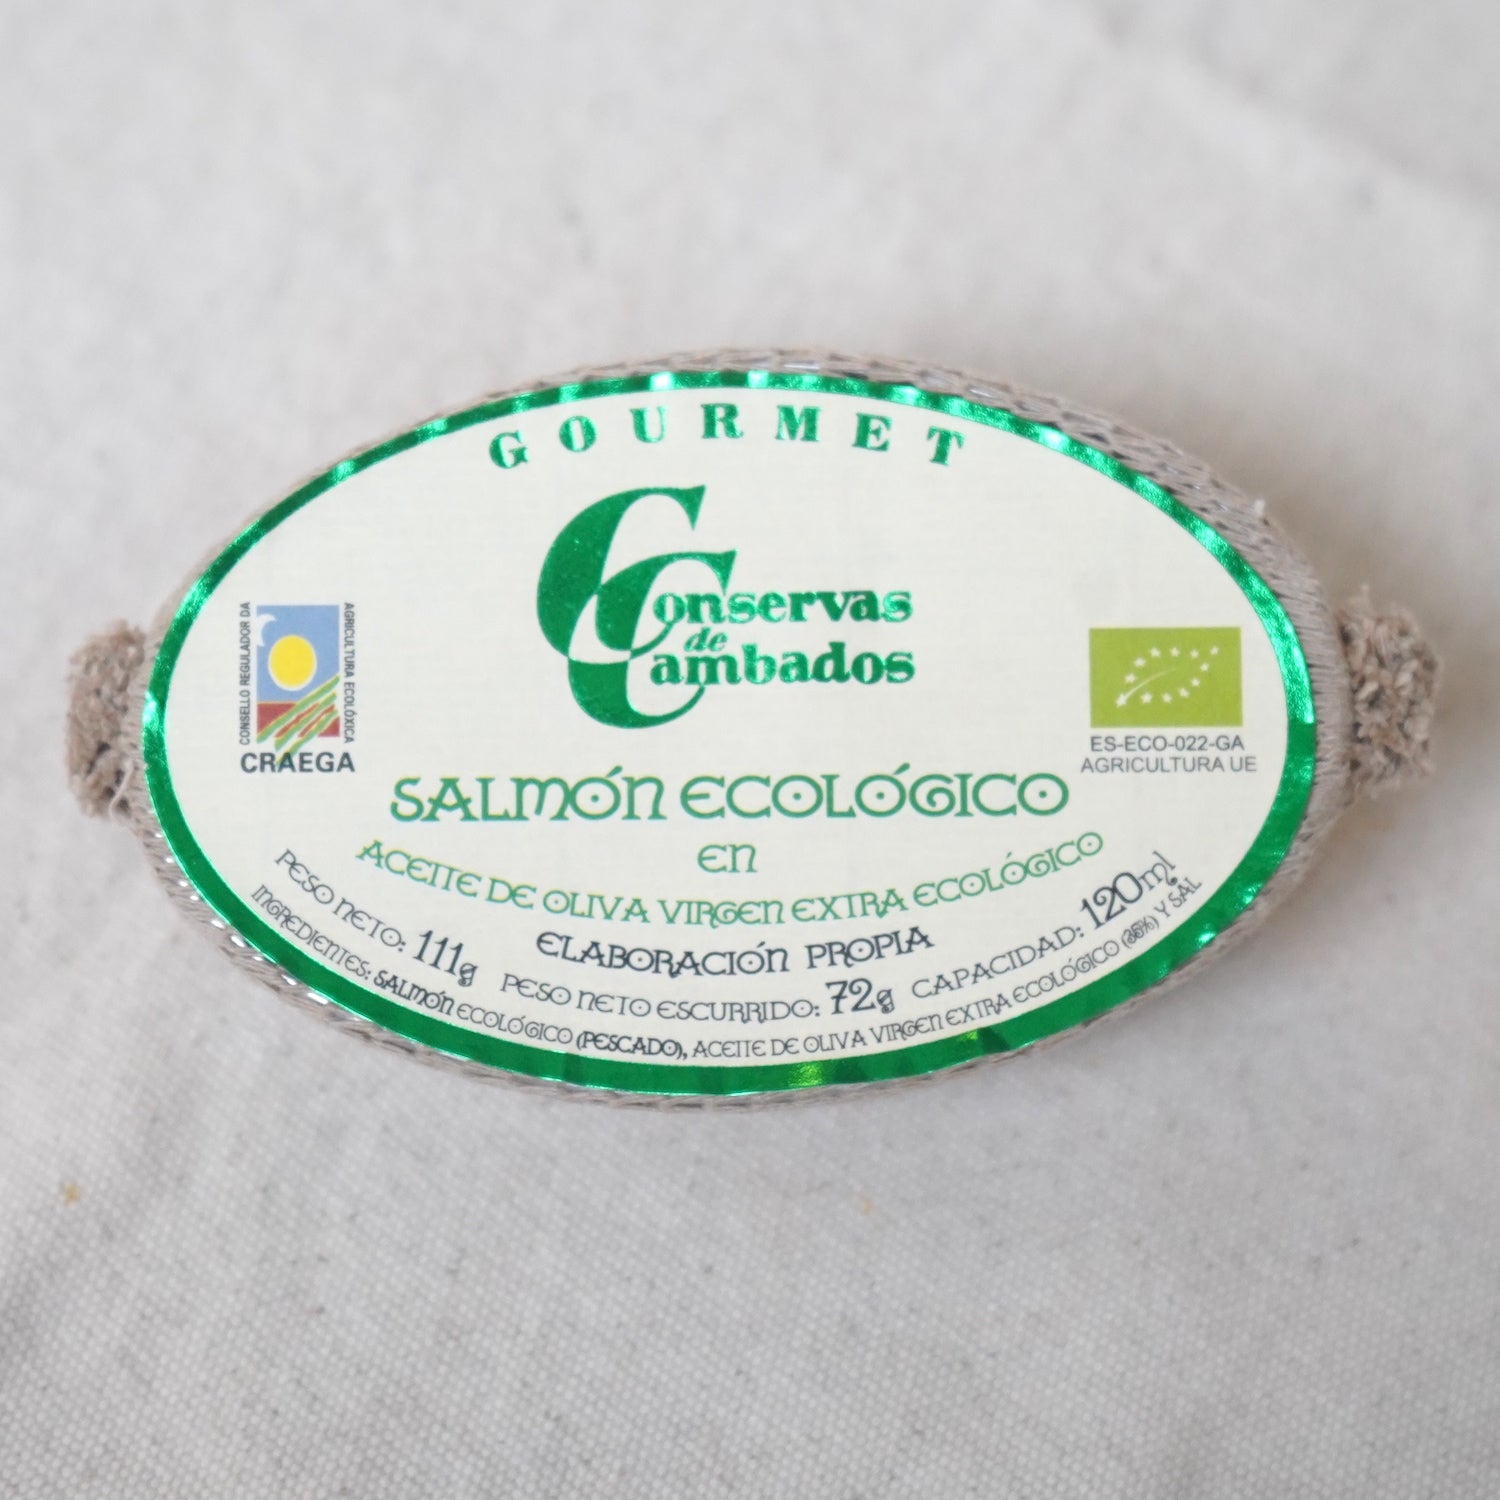 Lata de salmón ecológico en aceite de oliva